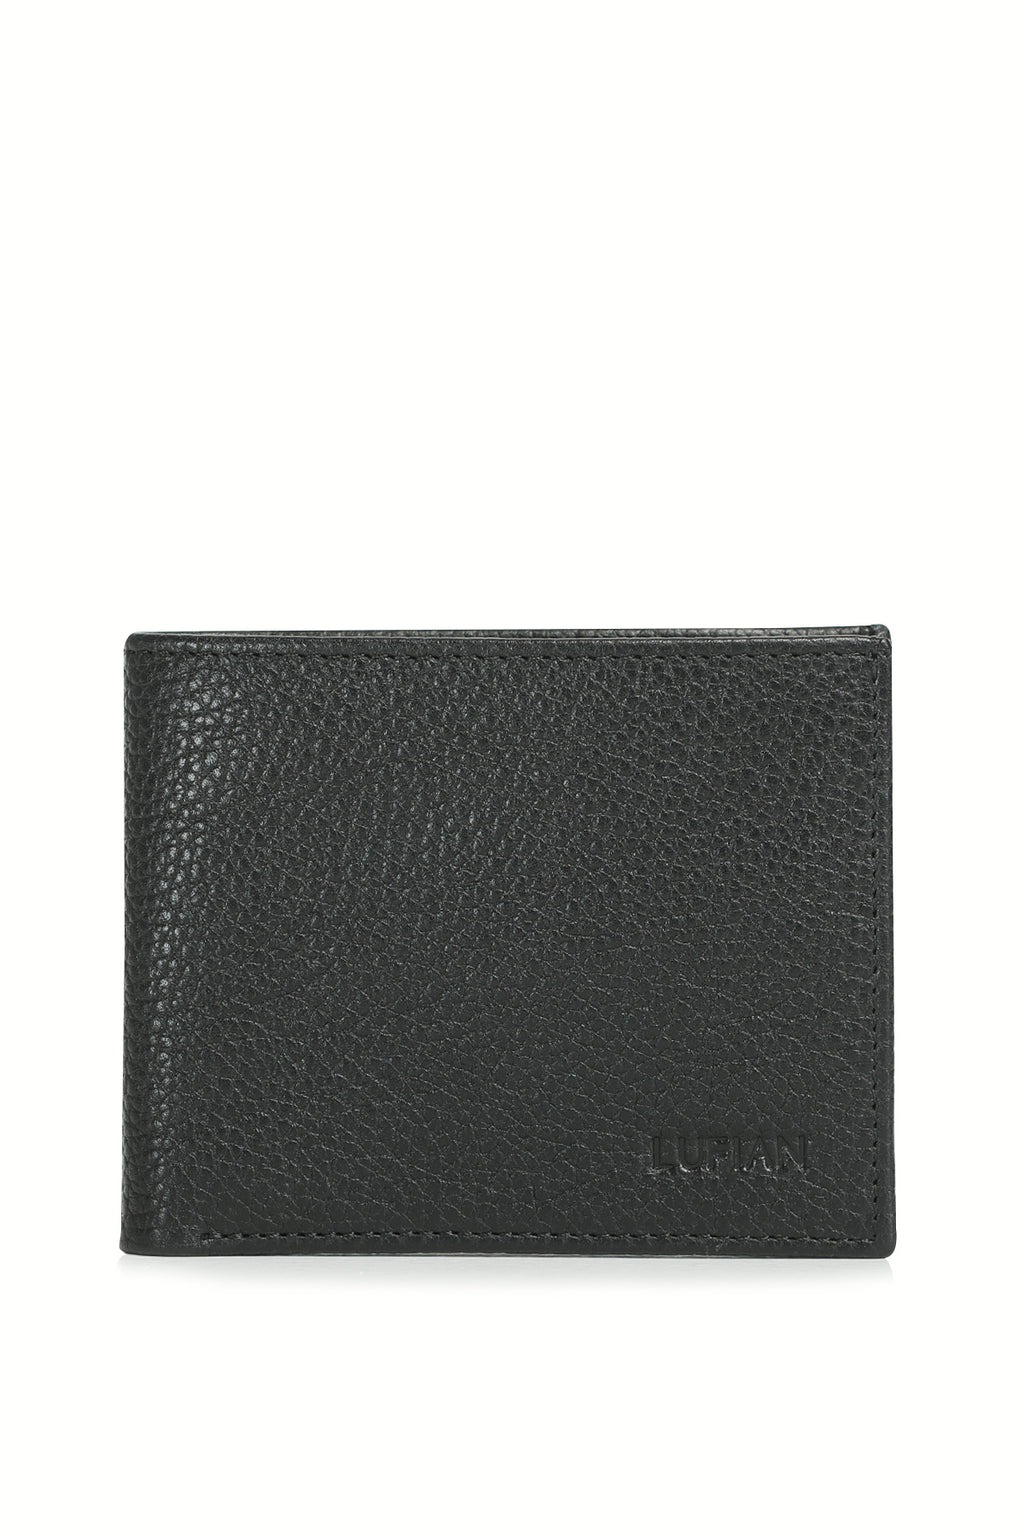 Jimmy Men's Leather Wallet